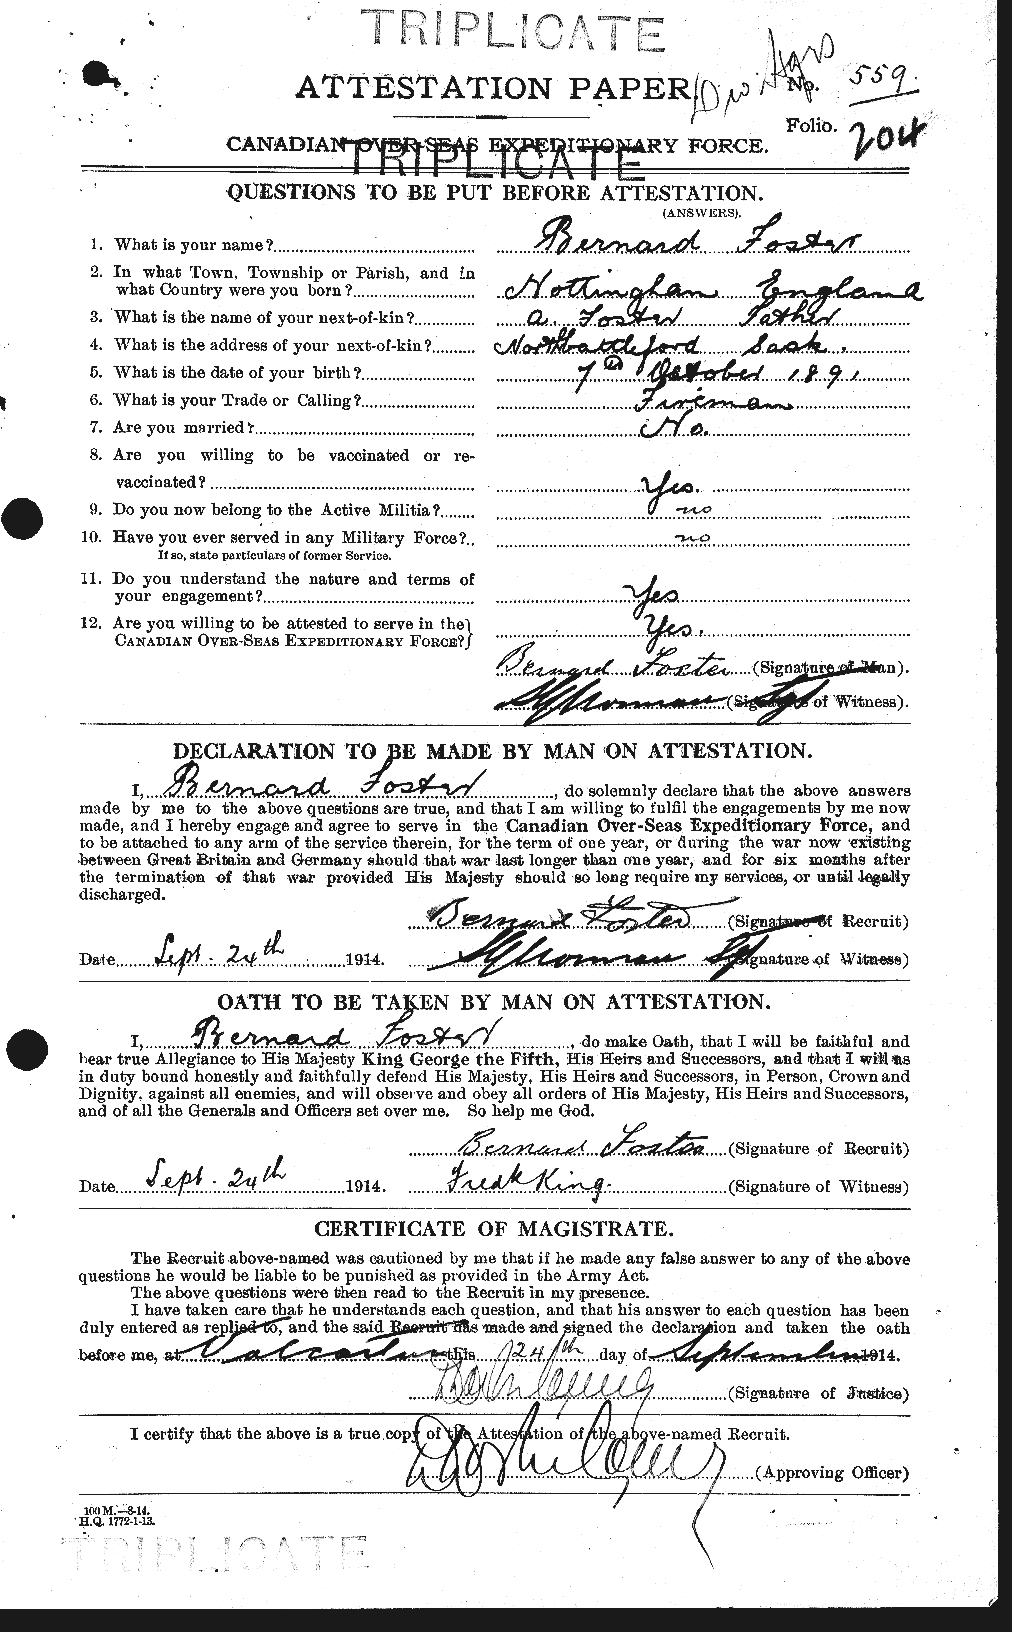 Dossiers du Personnel de la Première Guerre mondiale - CEC 330486a